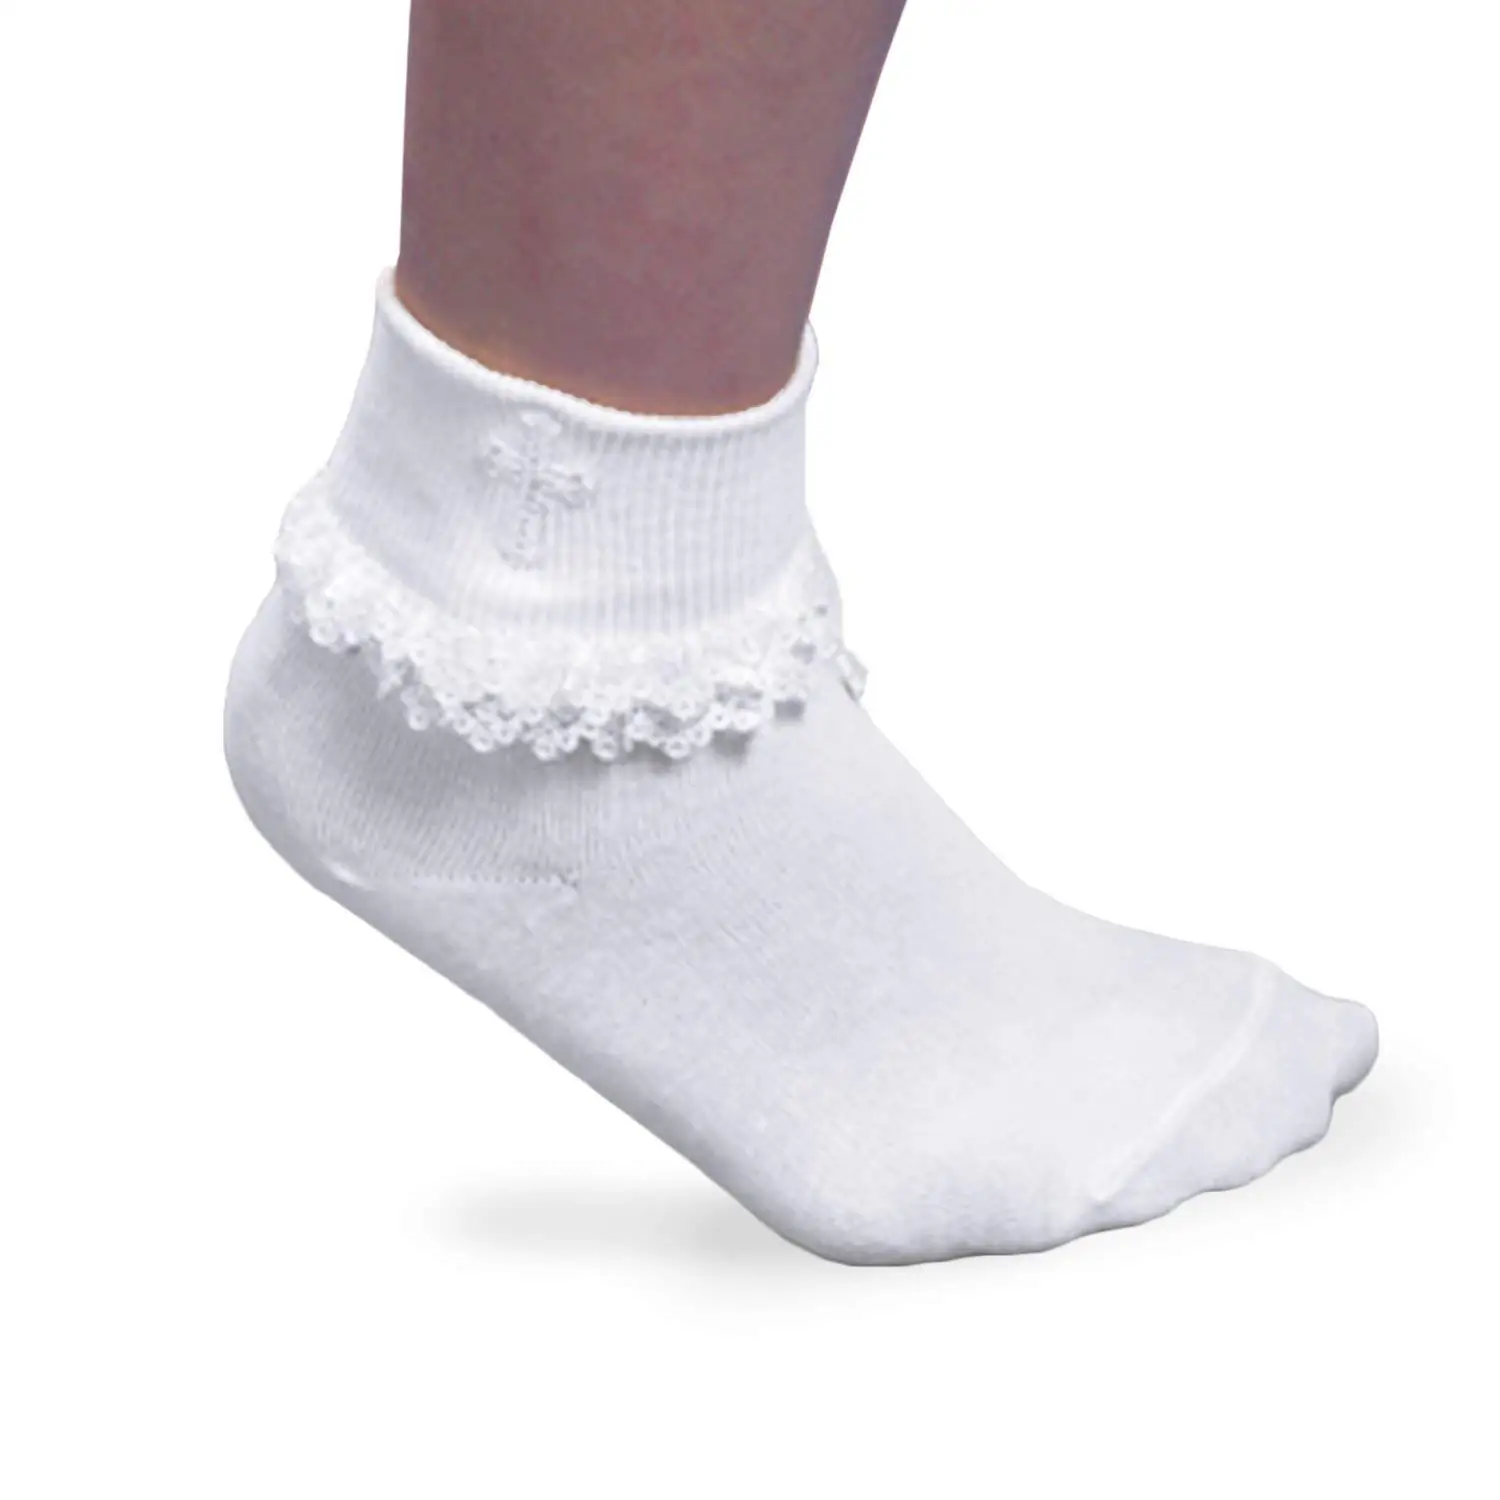 Jefferies Socks Big Eyelet Turn Cuff//Fancy Lace Girls Socks 3 Pack